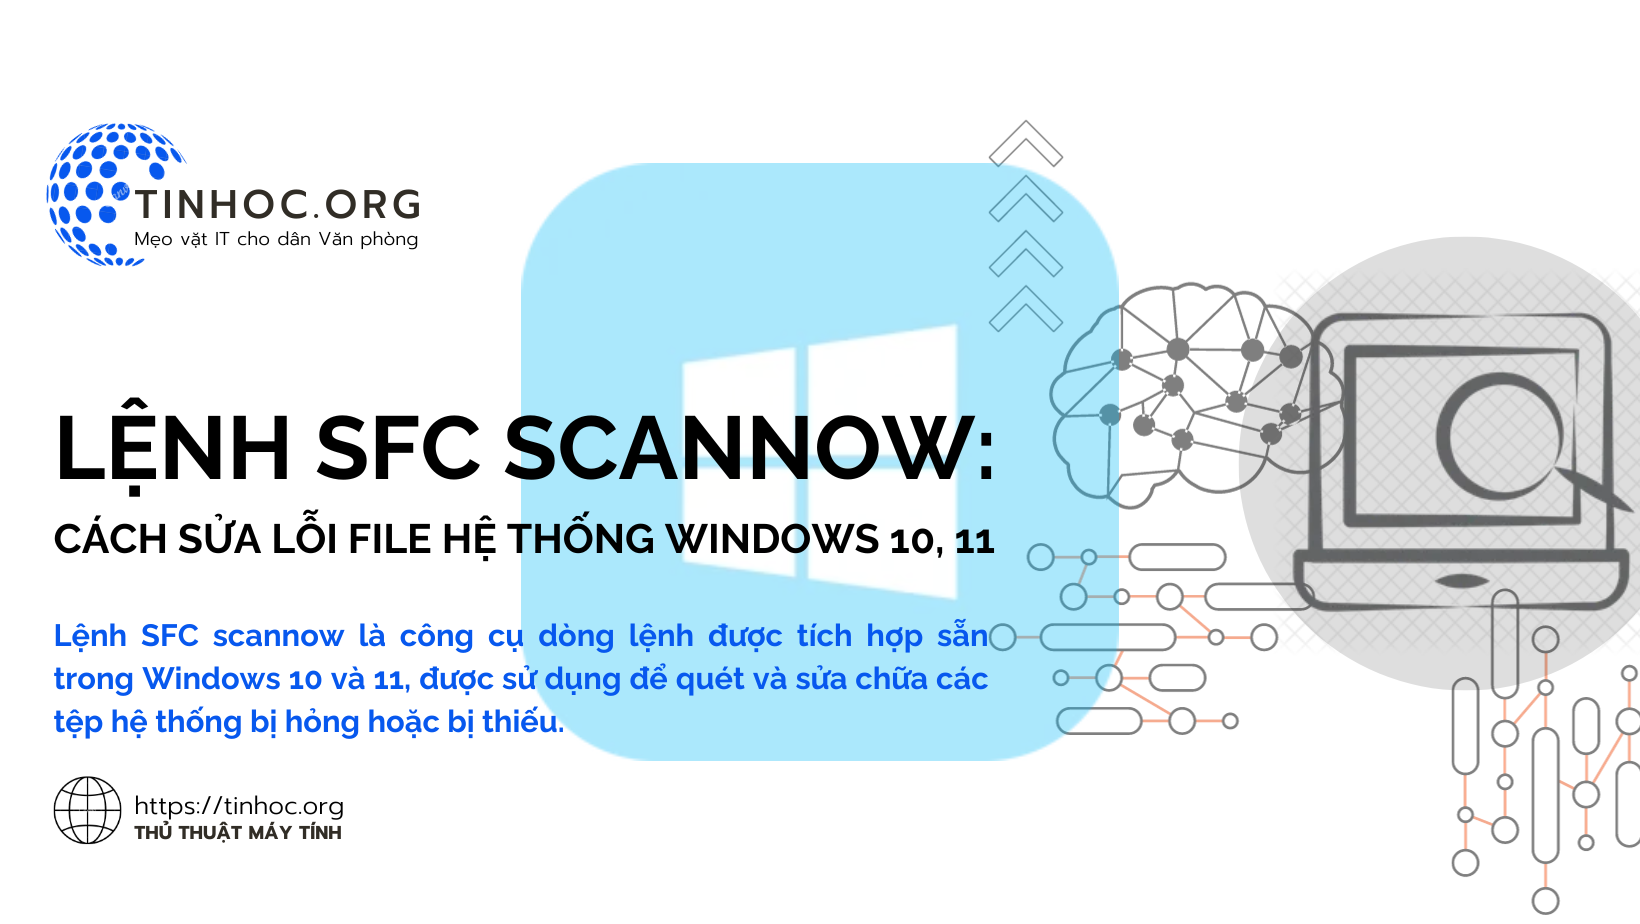 Lệnh SFC scannow là công cụ dòng lệnh được tích hợp sẵn trong Windows 10 và 11, được sử dụng để quét và sửa chữa các tệp hệ thống bị hỏng hoặc bị thiếu.